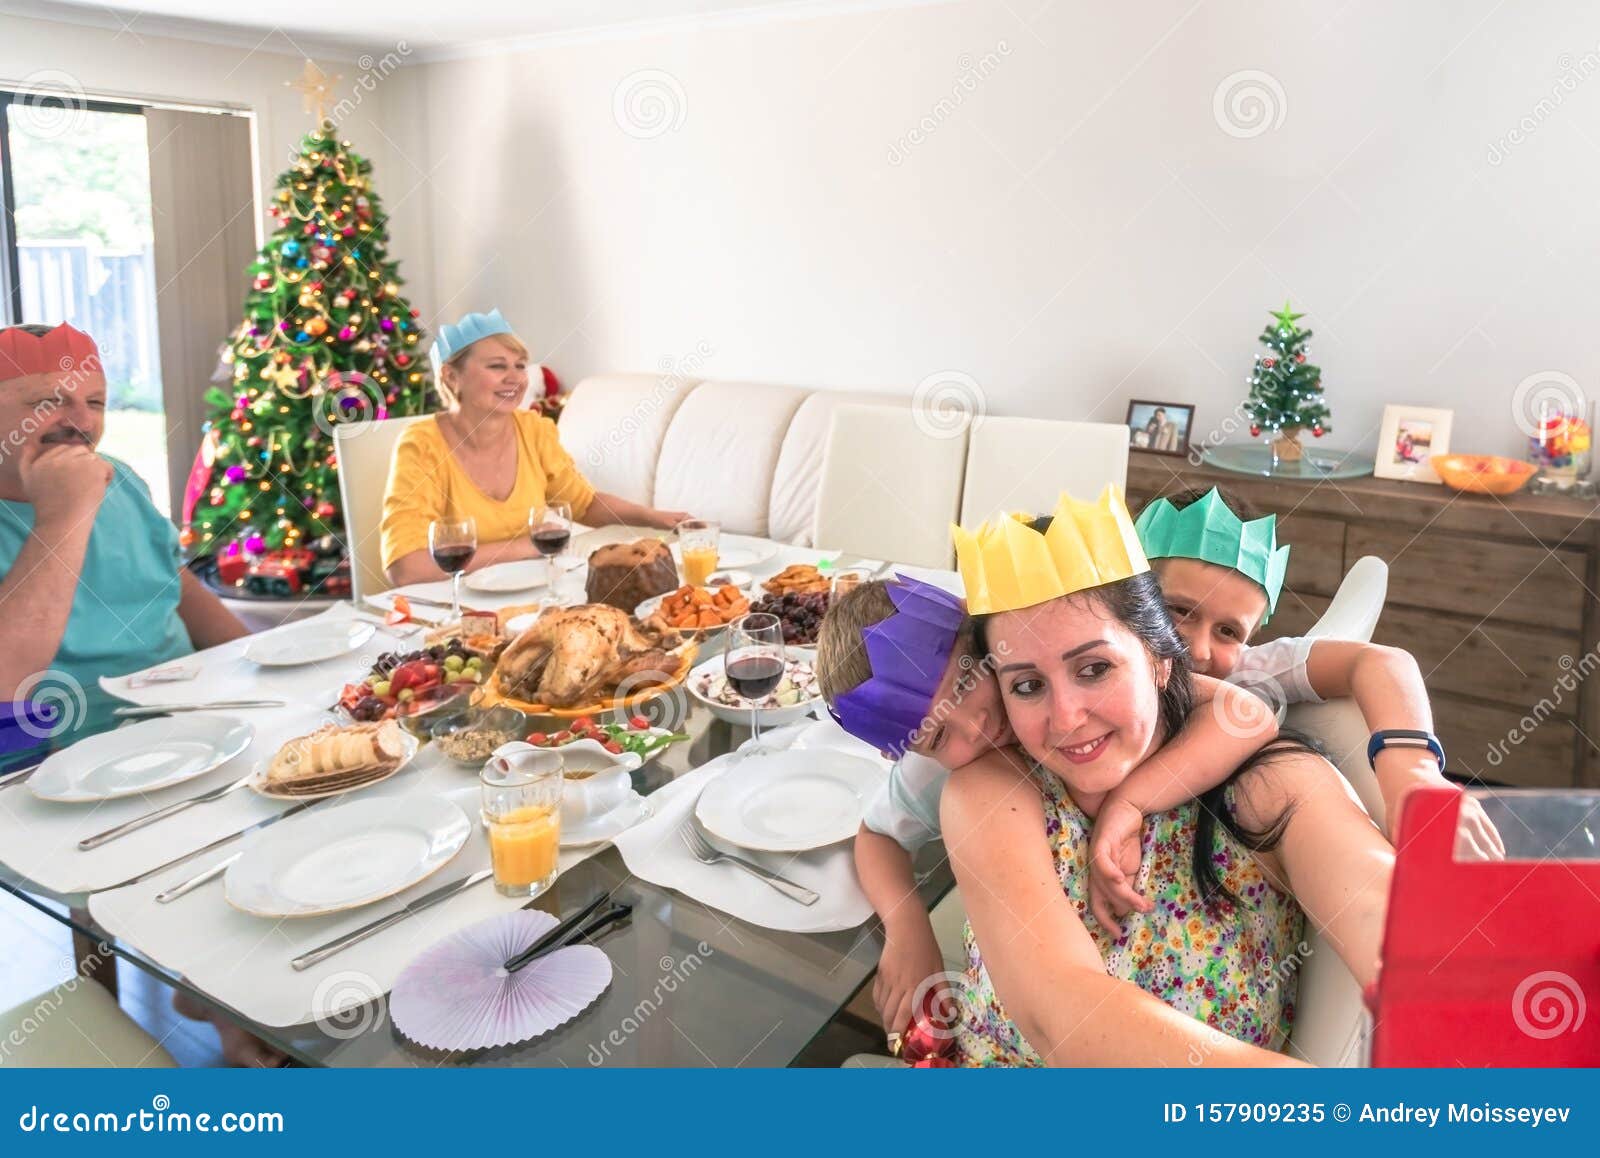 Christmas Family Celebration Inside House Stock Image - Image of australia, happy: 157909235